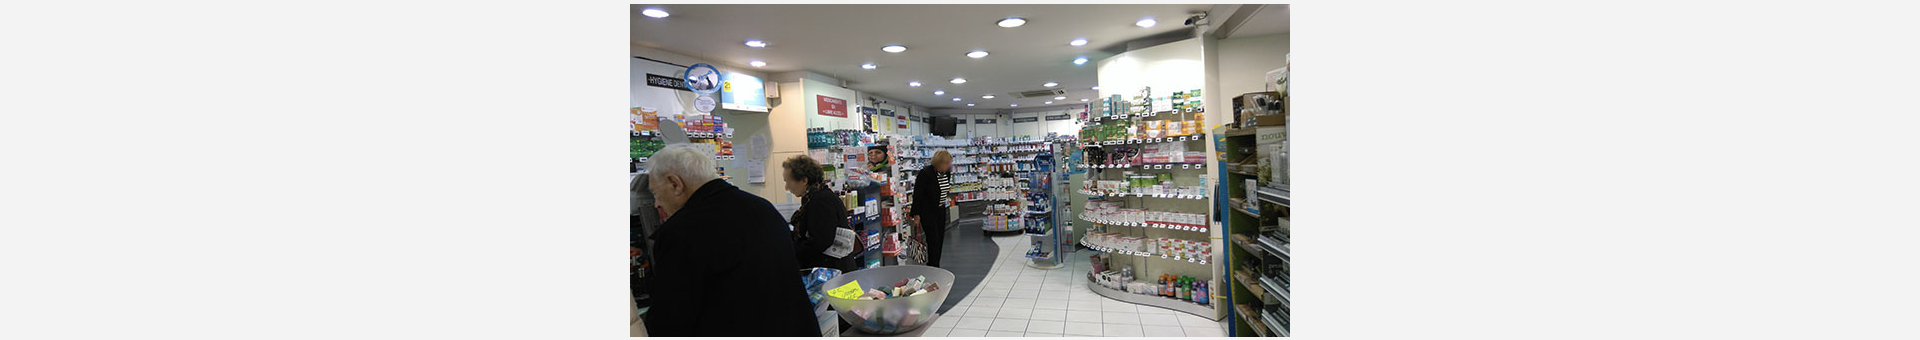 Grande Pharmacie D'auteuil,Paris